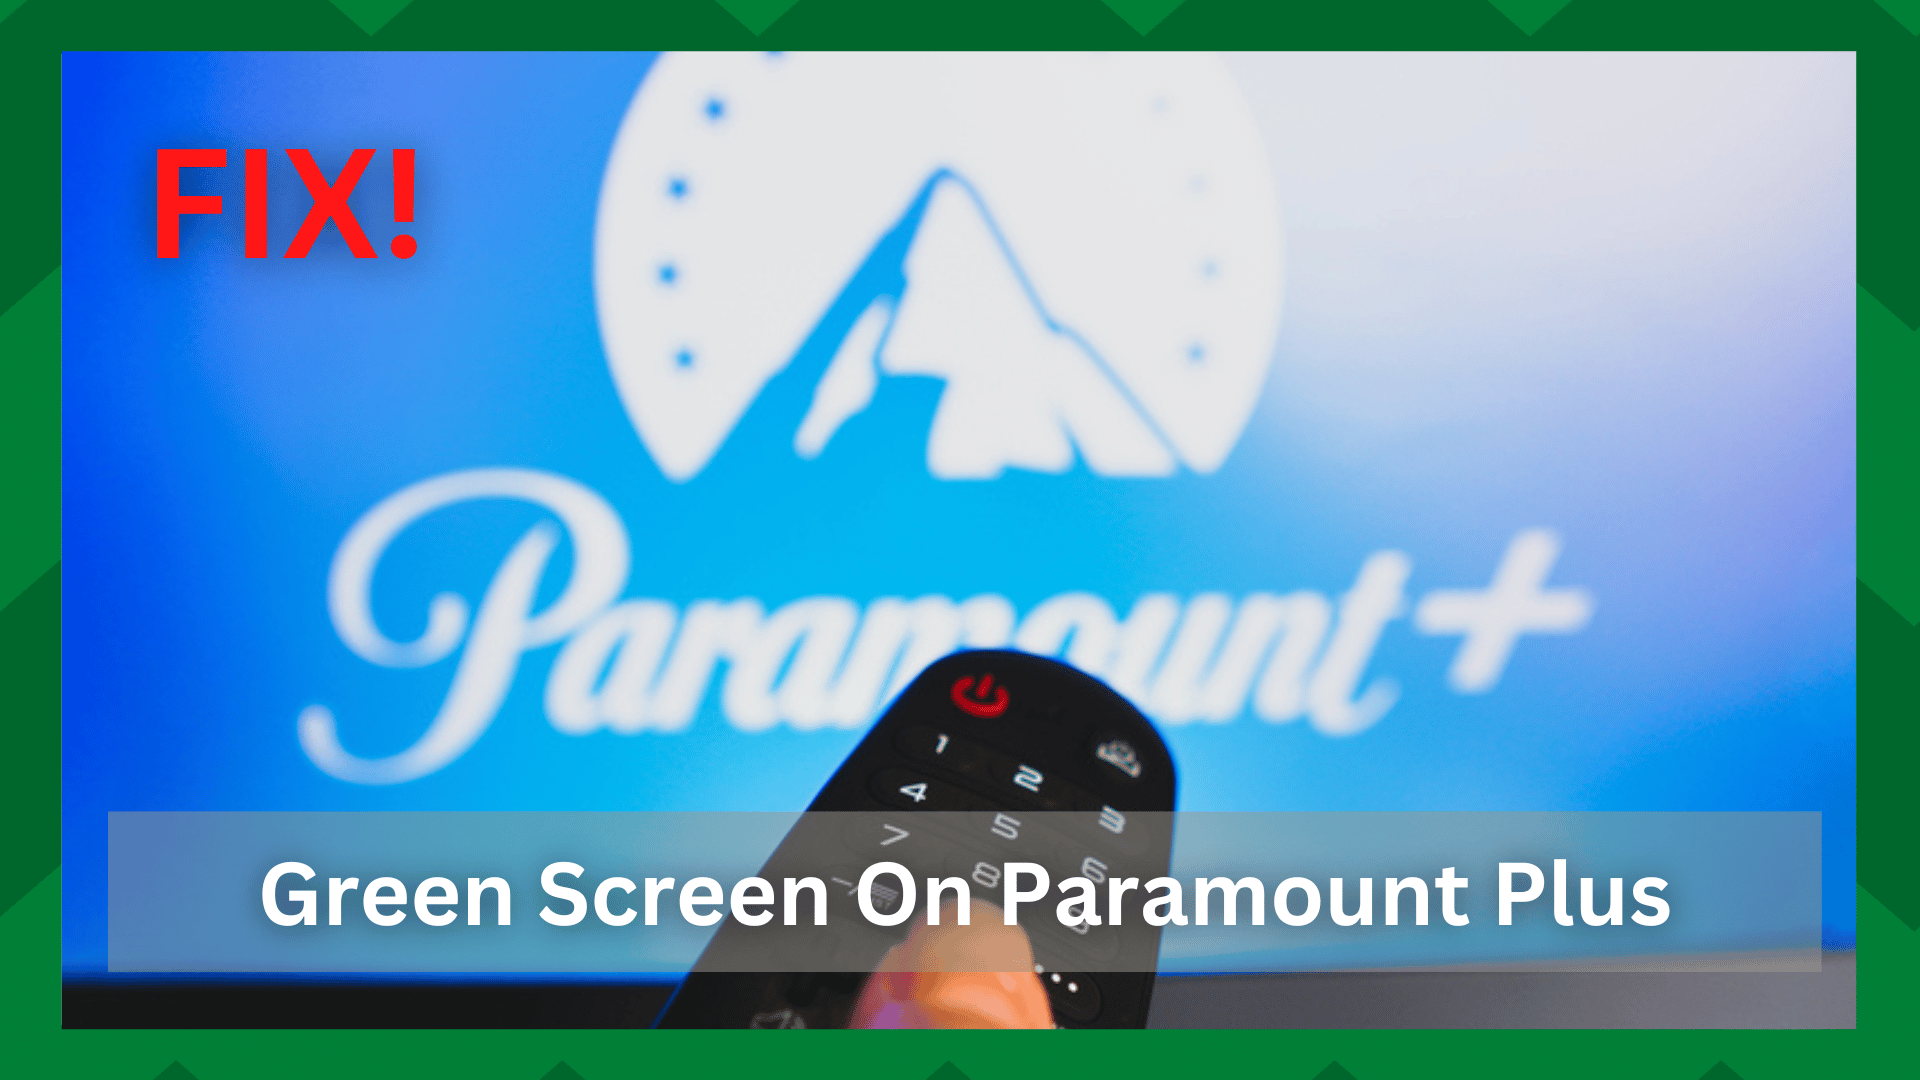 Paramount Plus 녹색 화면을 수정하는 5가지 빠른 단계